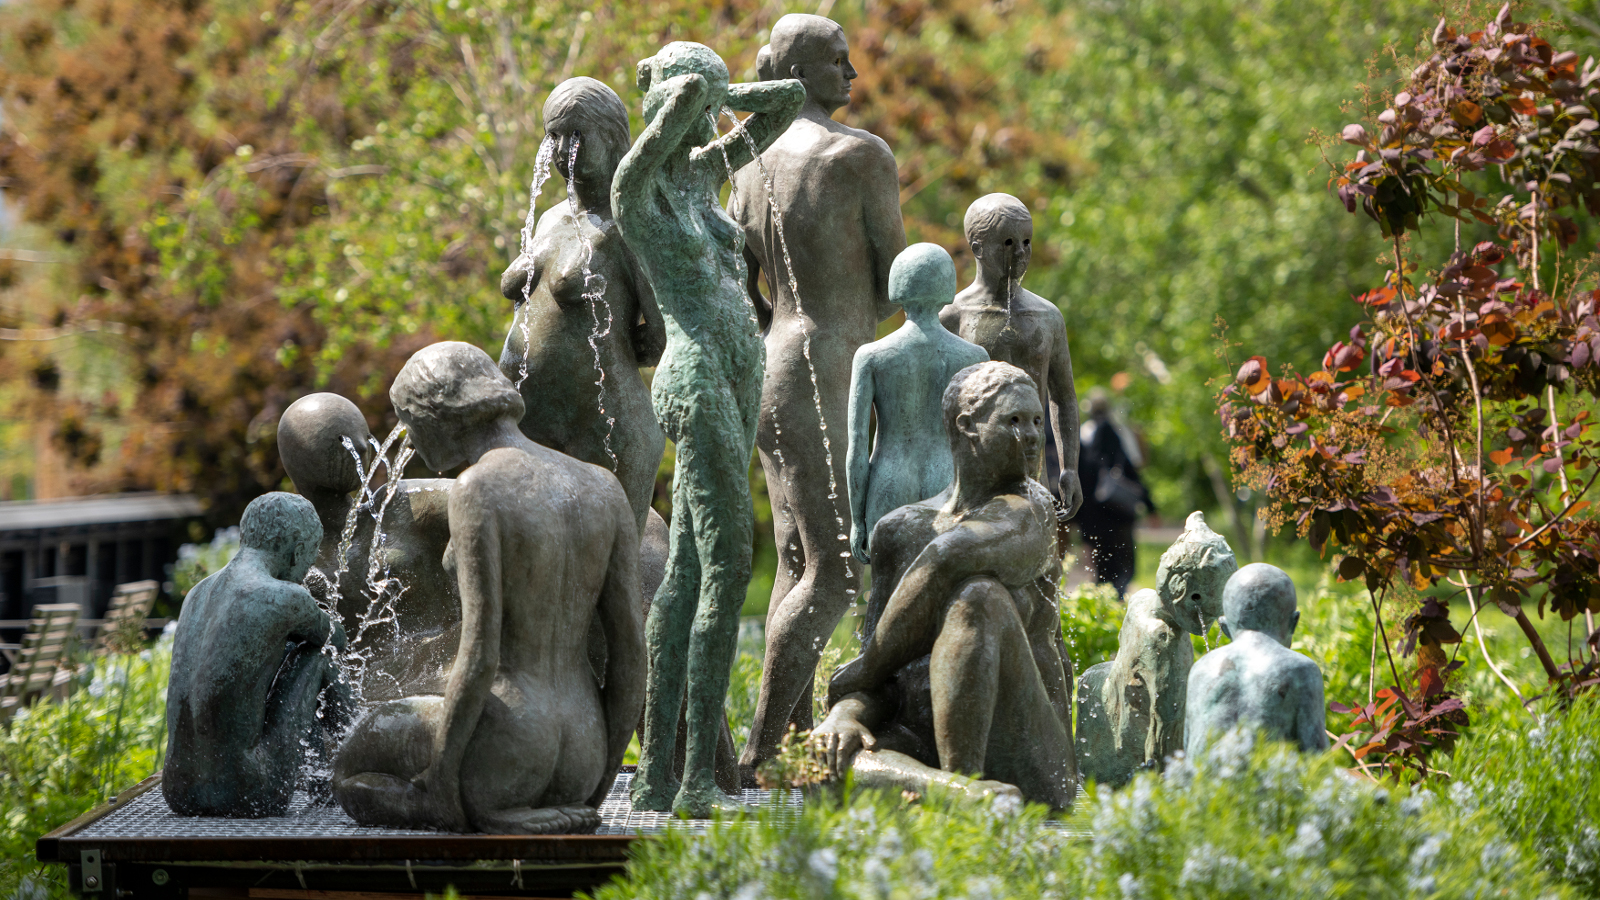 Kuvassa on ryhmä patsaita naisista ja lapsista selin seisomassa ja istumassa vihreiden lehtipuiden ja pensaiden keskellä suihkulähteen äärellä. Patsaat ovat vihreän harmaita.